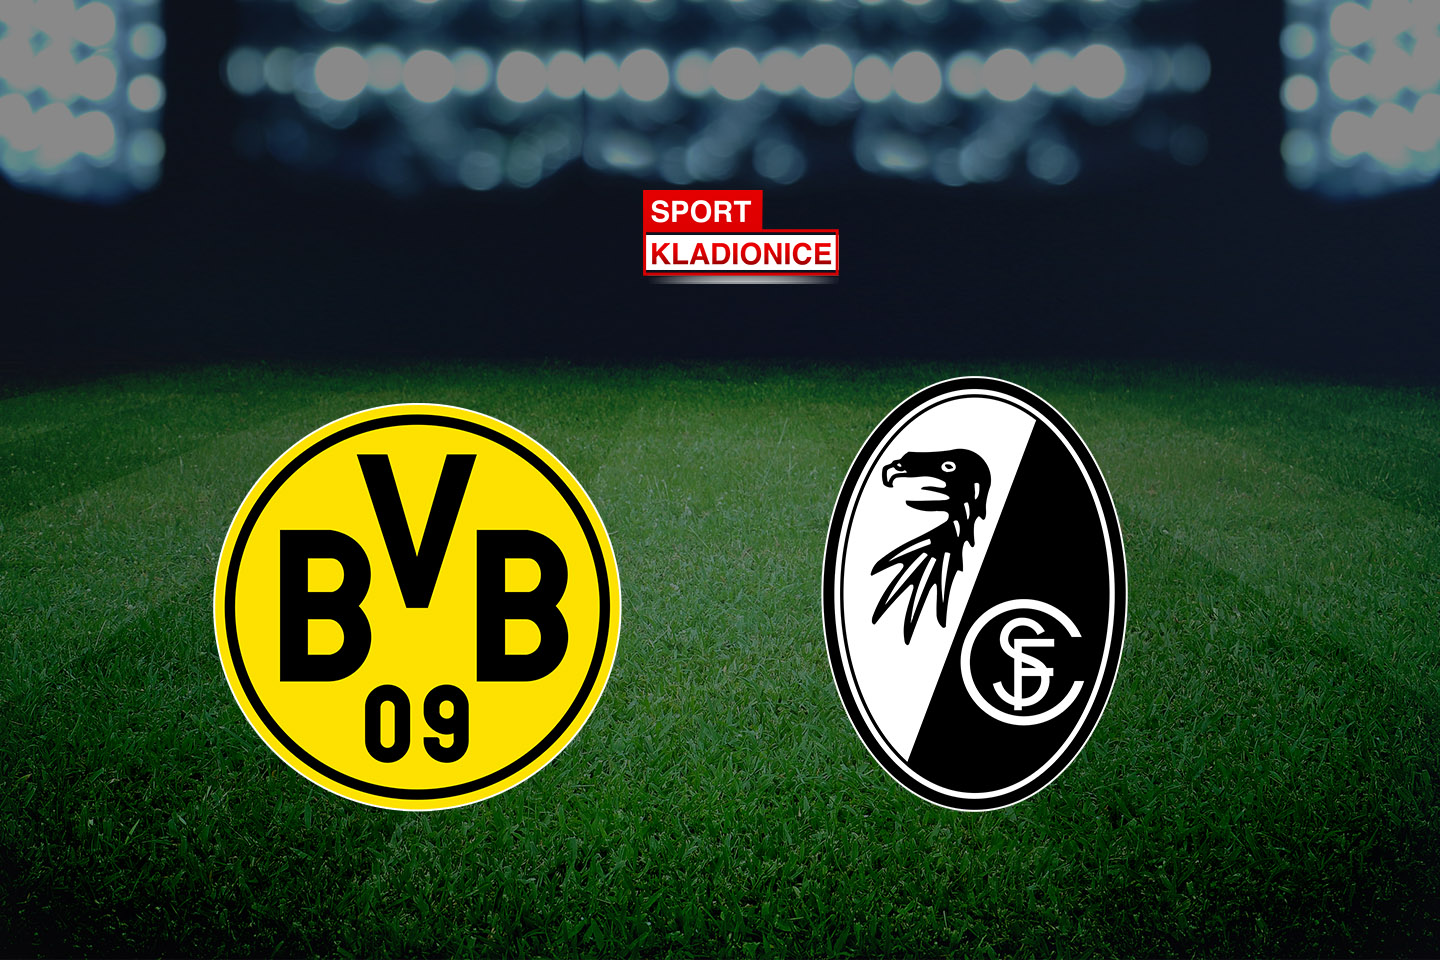 Borussia Dortmund – Freiburg